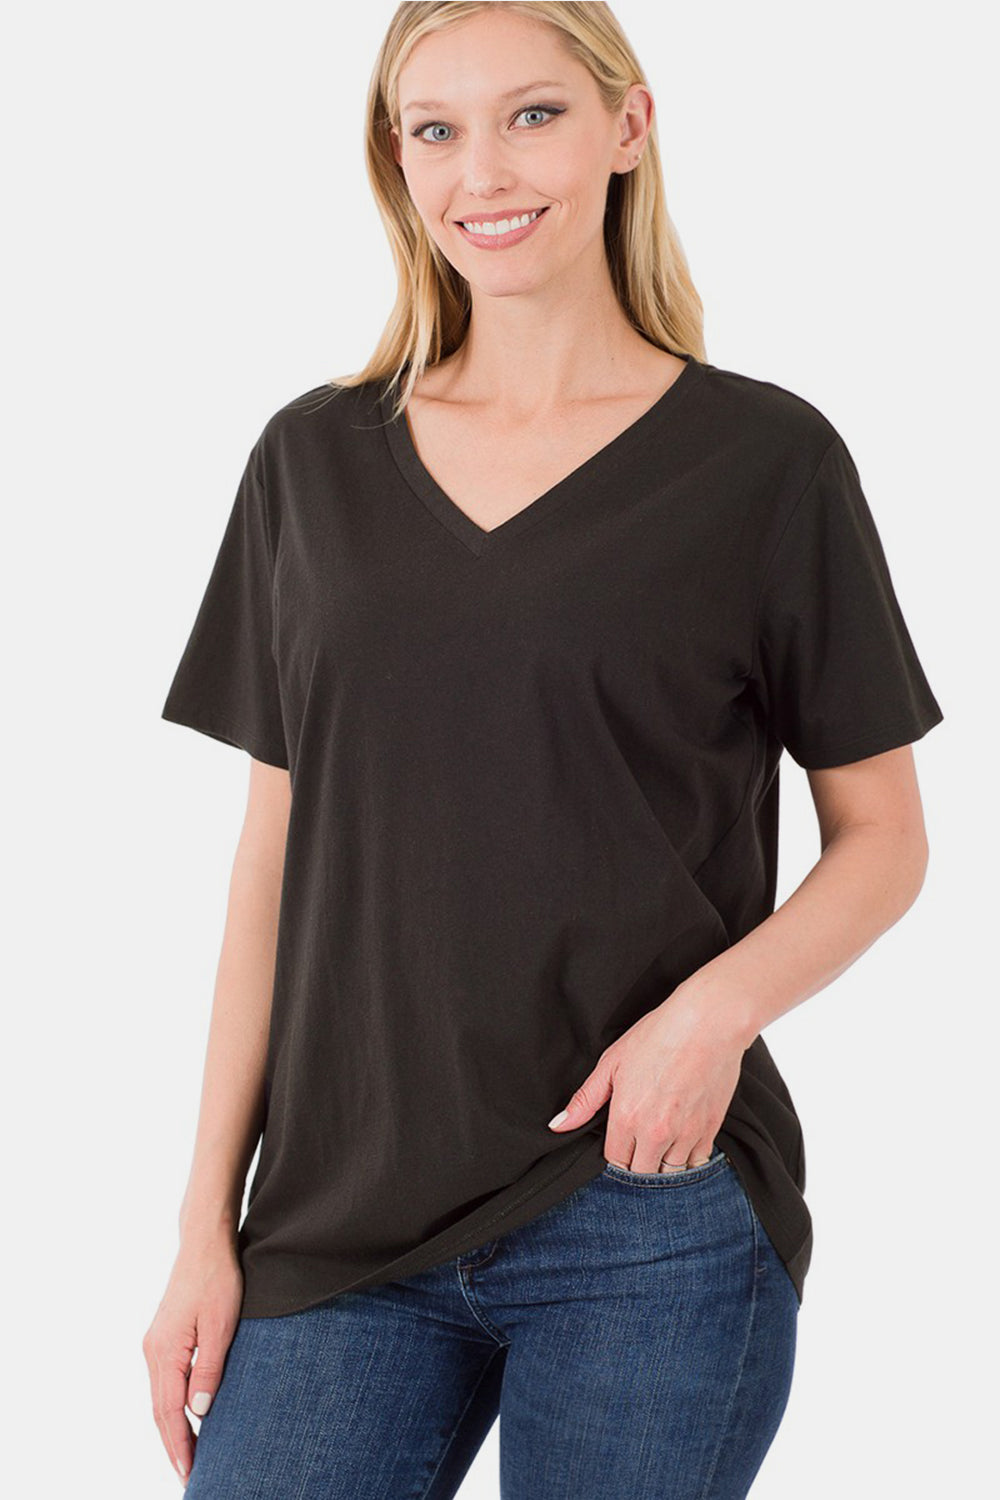 Zenana Full Size V-Neck Short Sleeve T-Shirt Trendsi